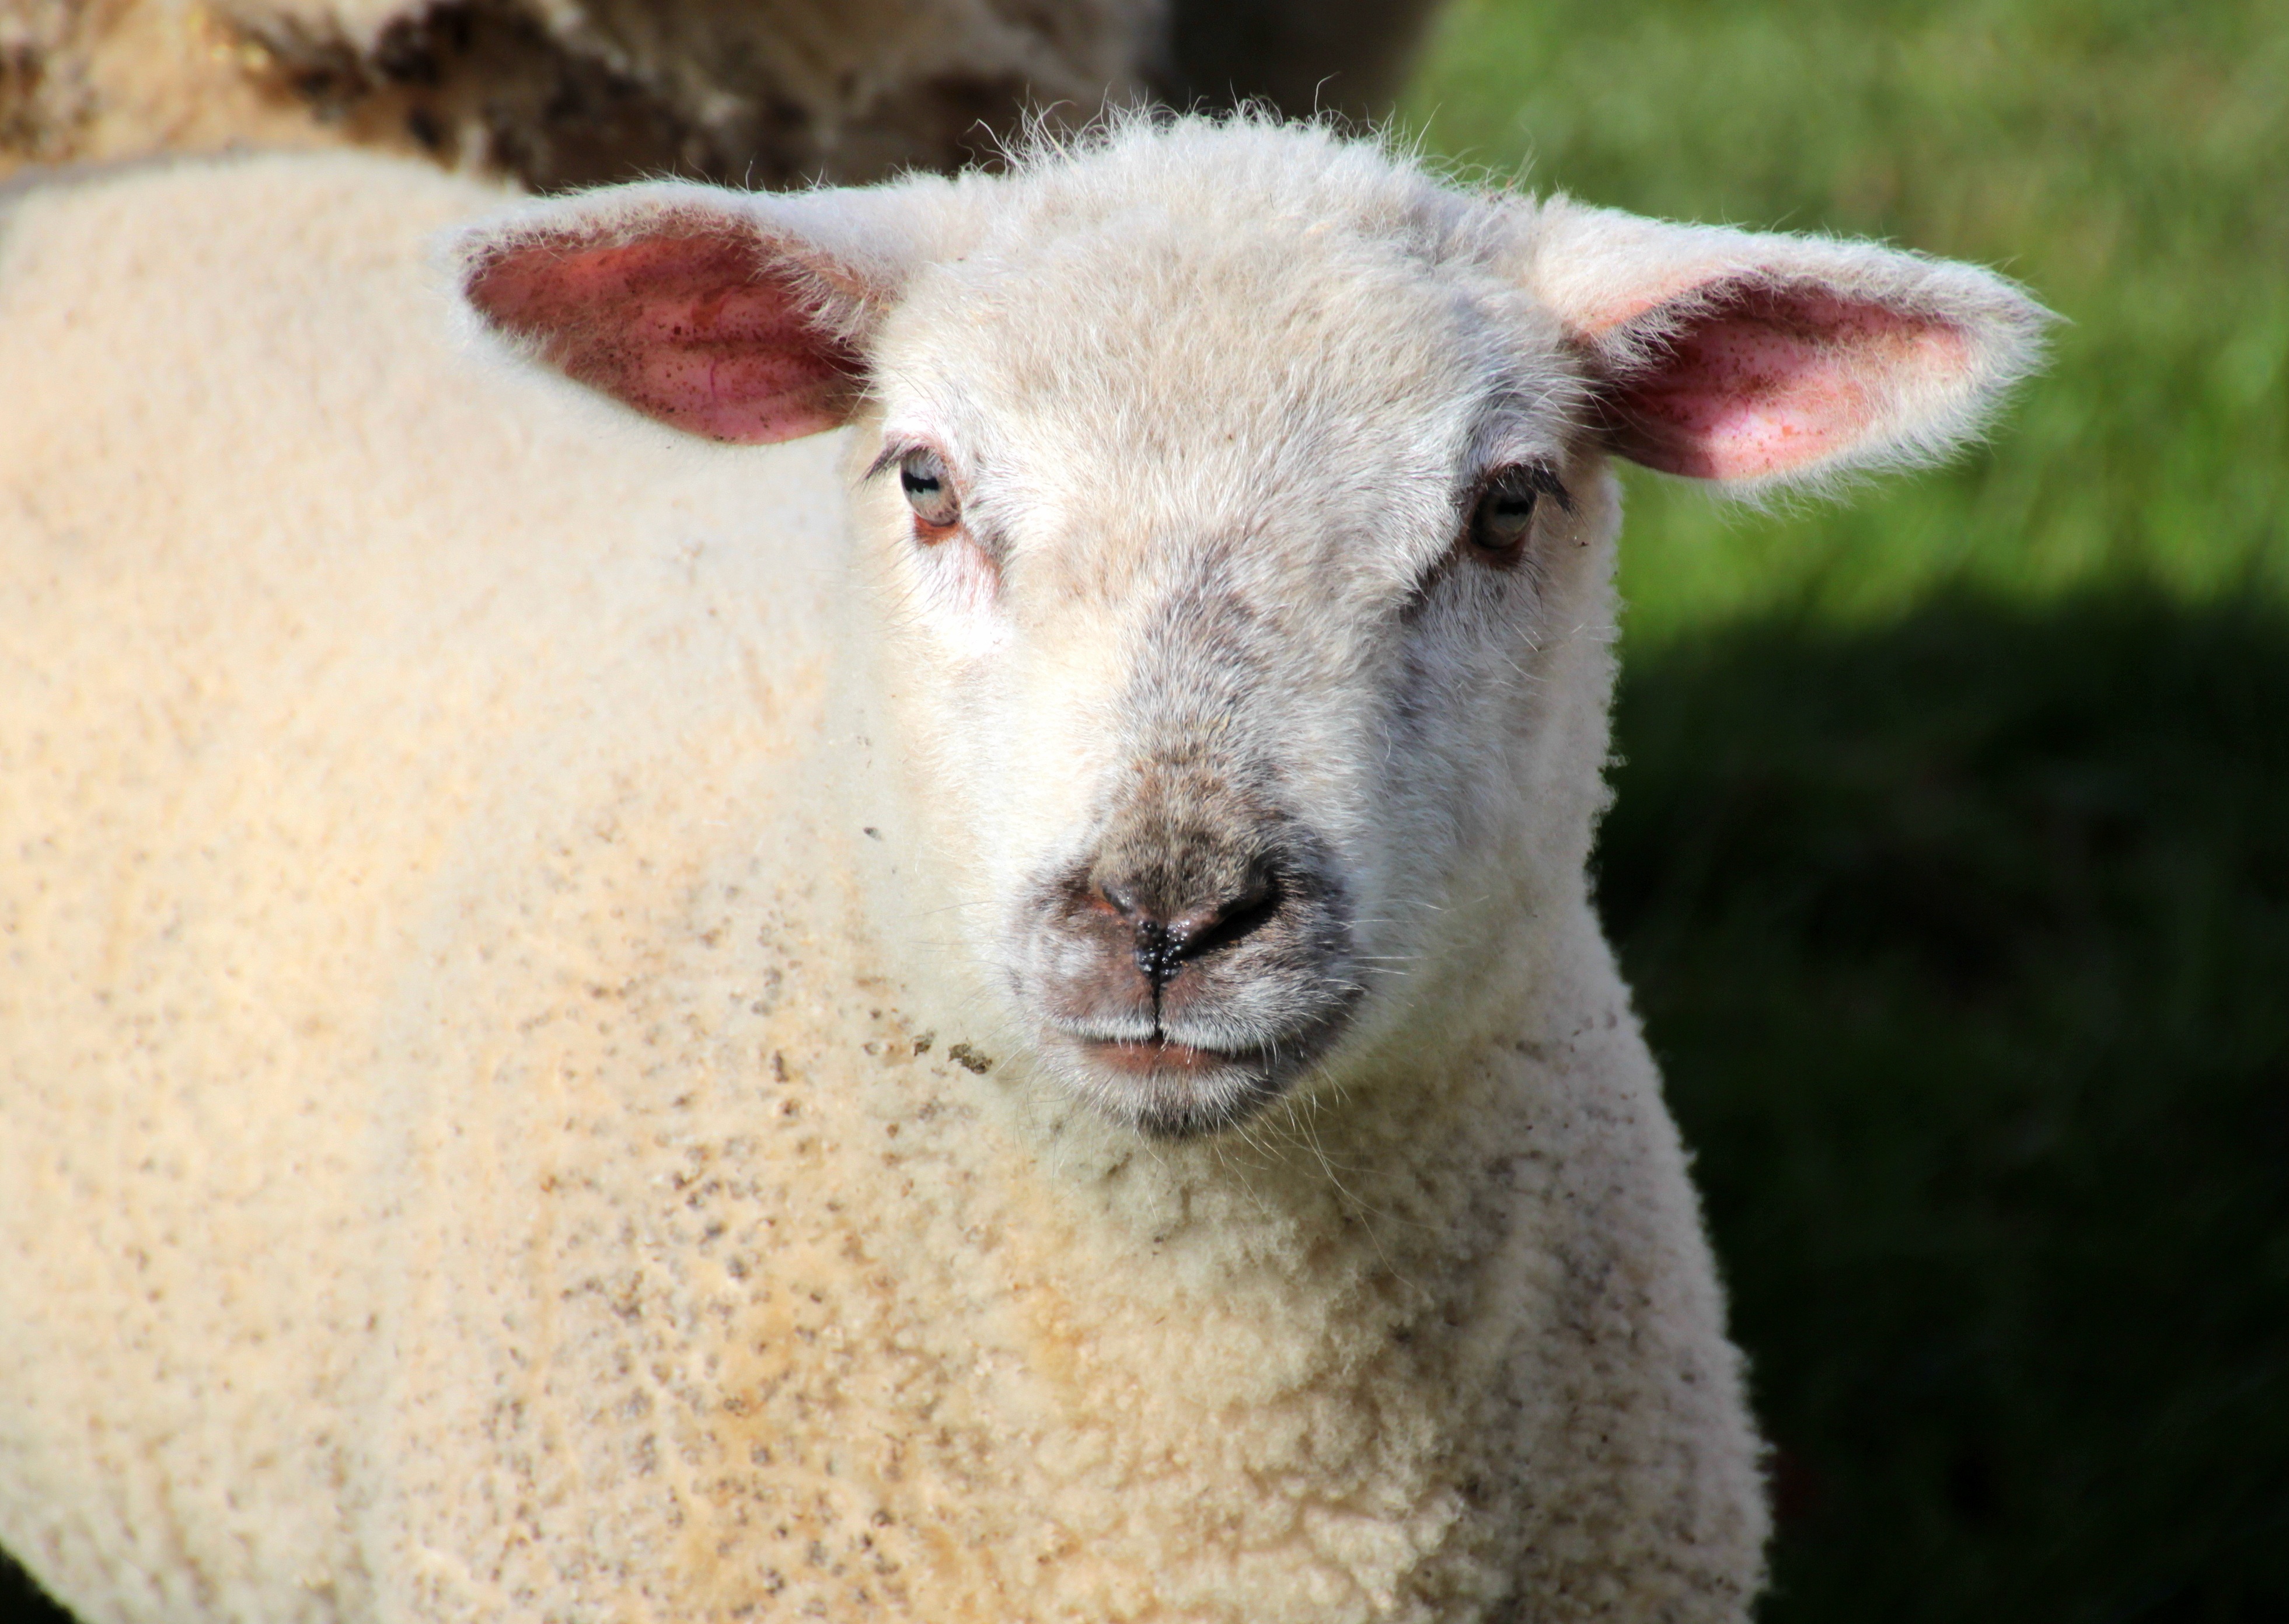 Sheep farm photo